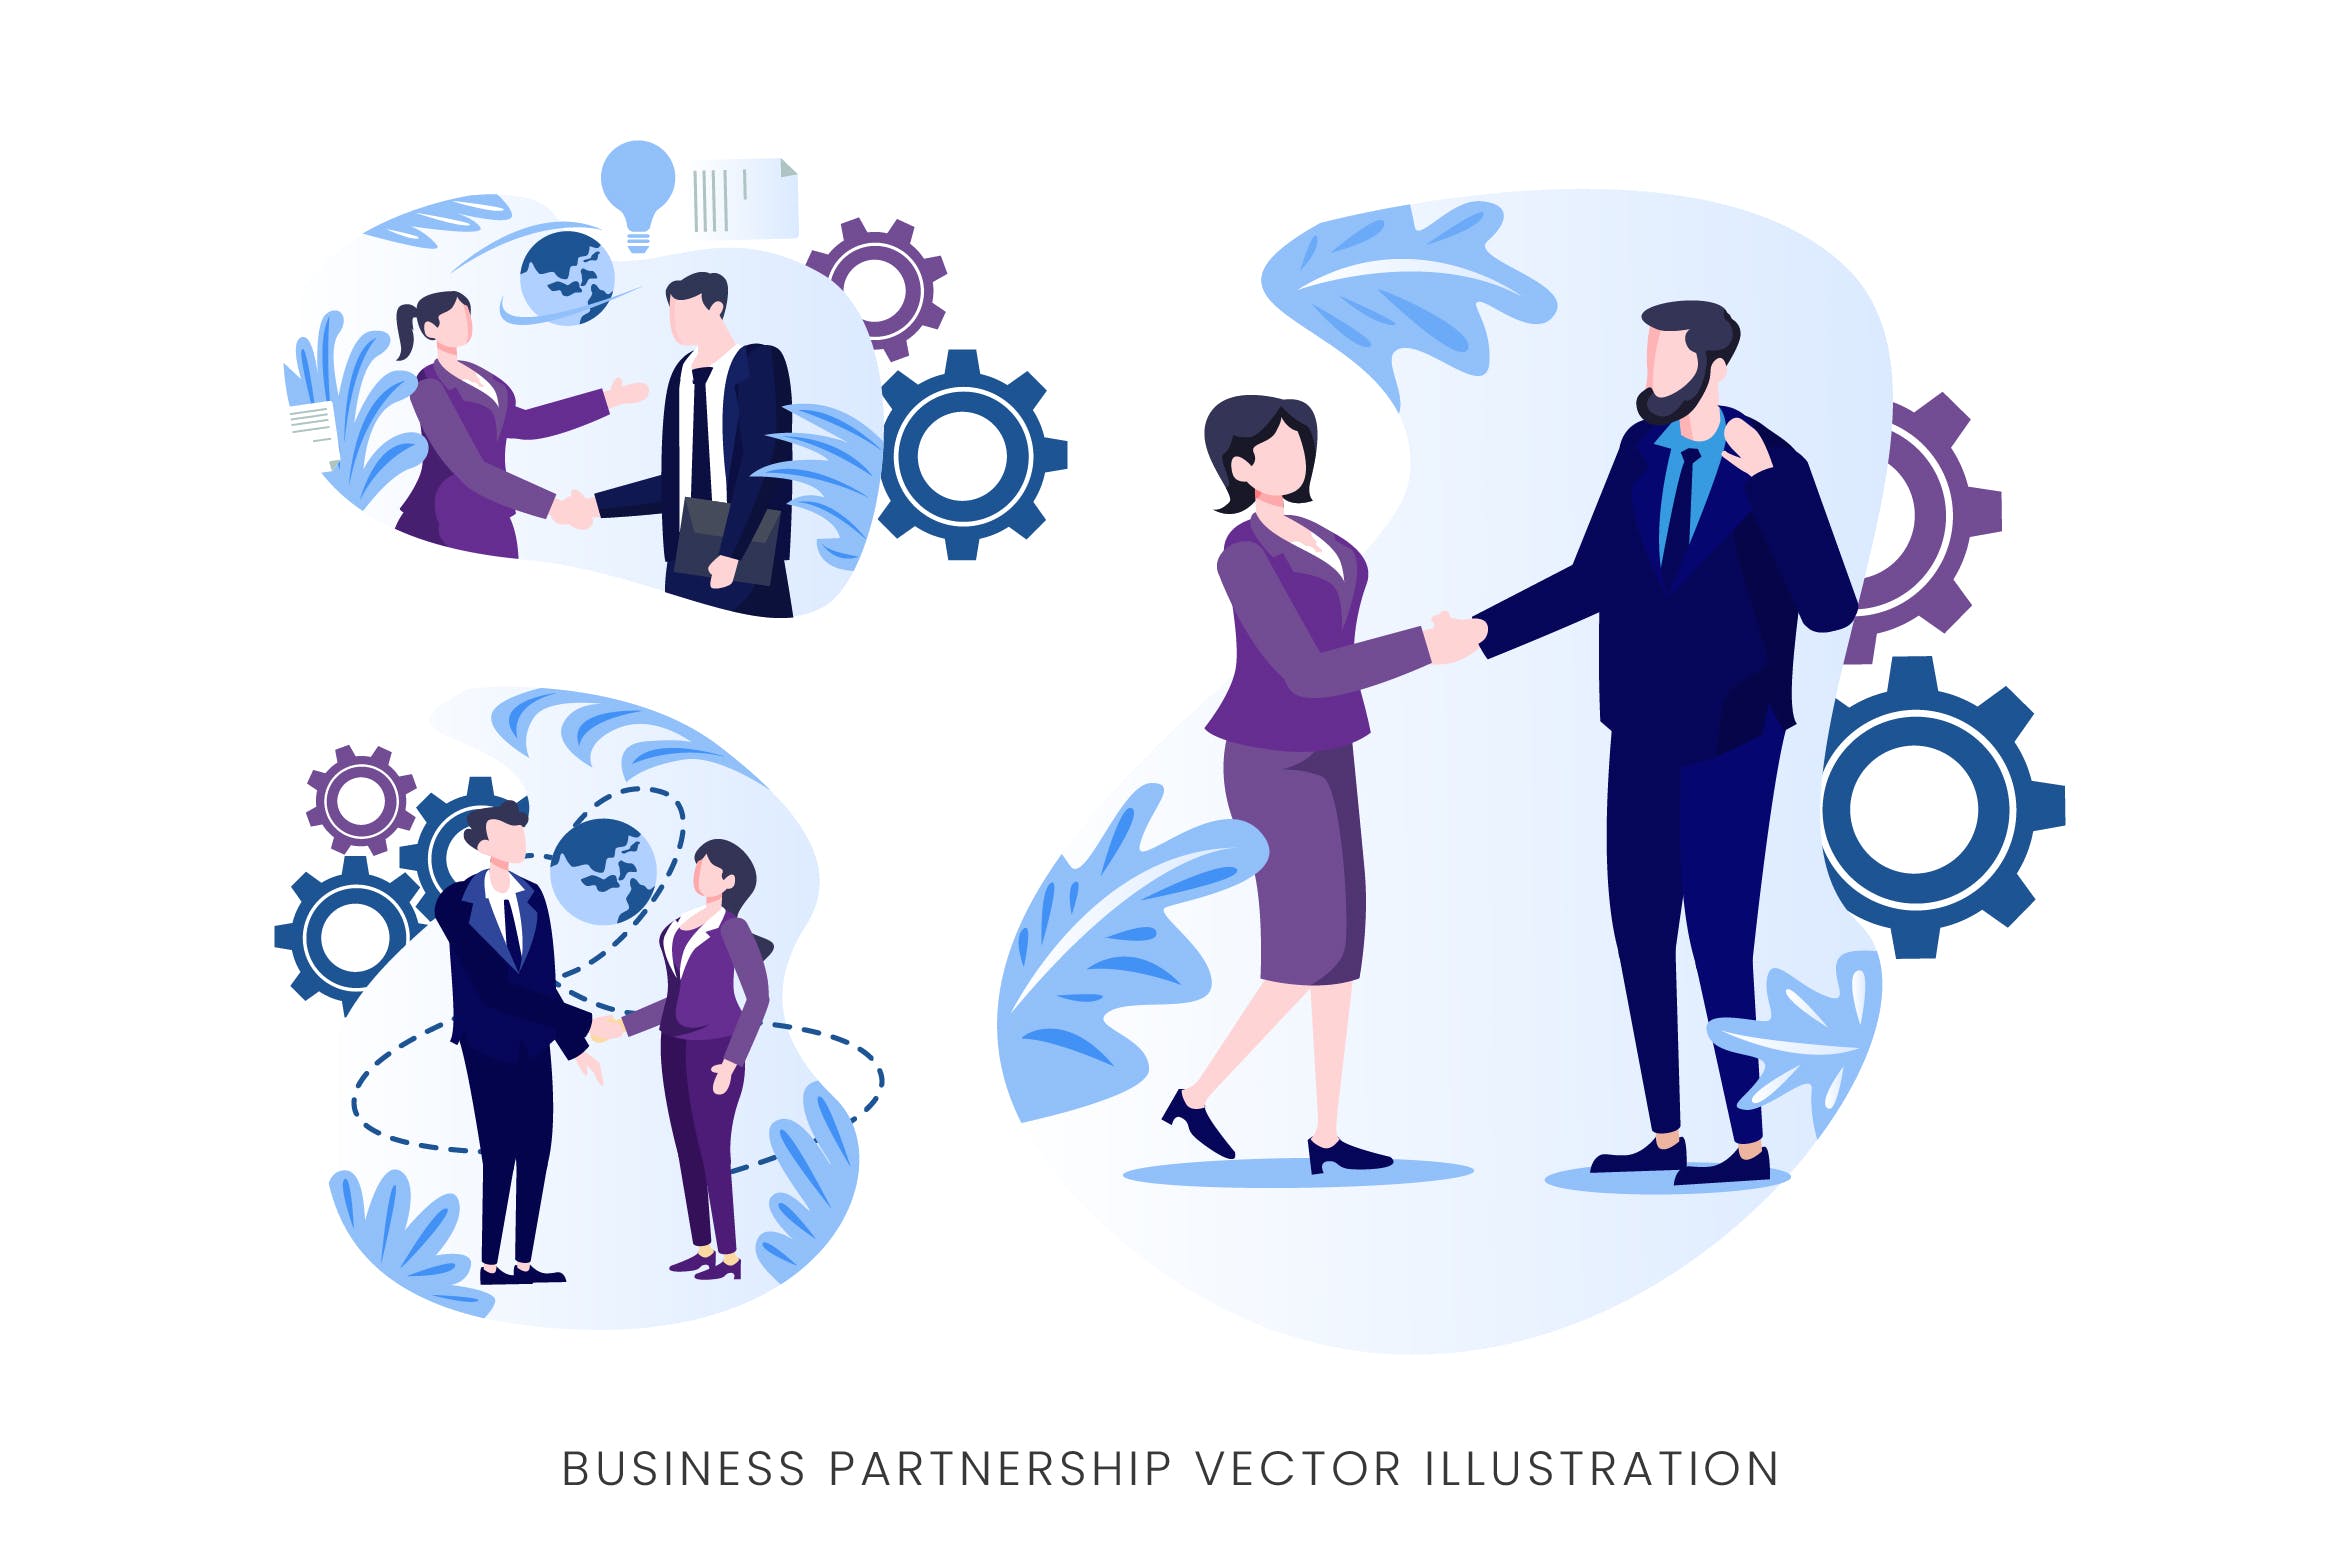 业务伙伴关系人物形象大洋岛精选手绘插画矢量素材 Business Partnership Vector Character Set插图